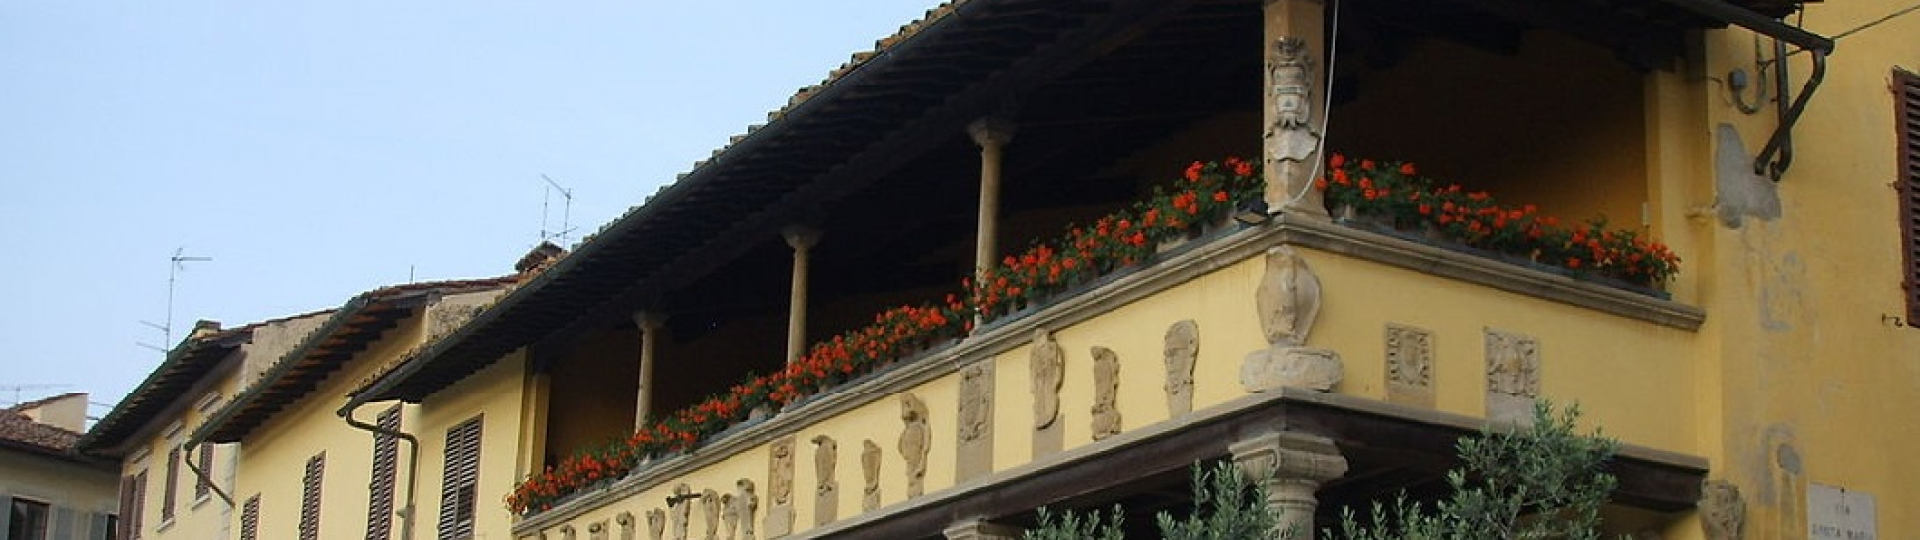 Palazzo pretorio fiesole